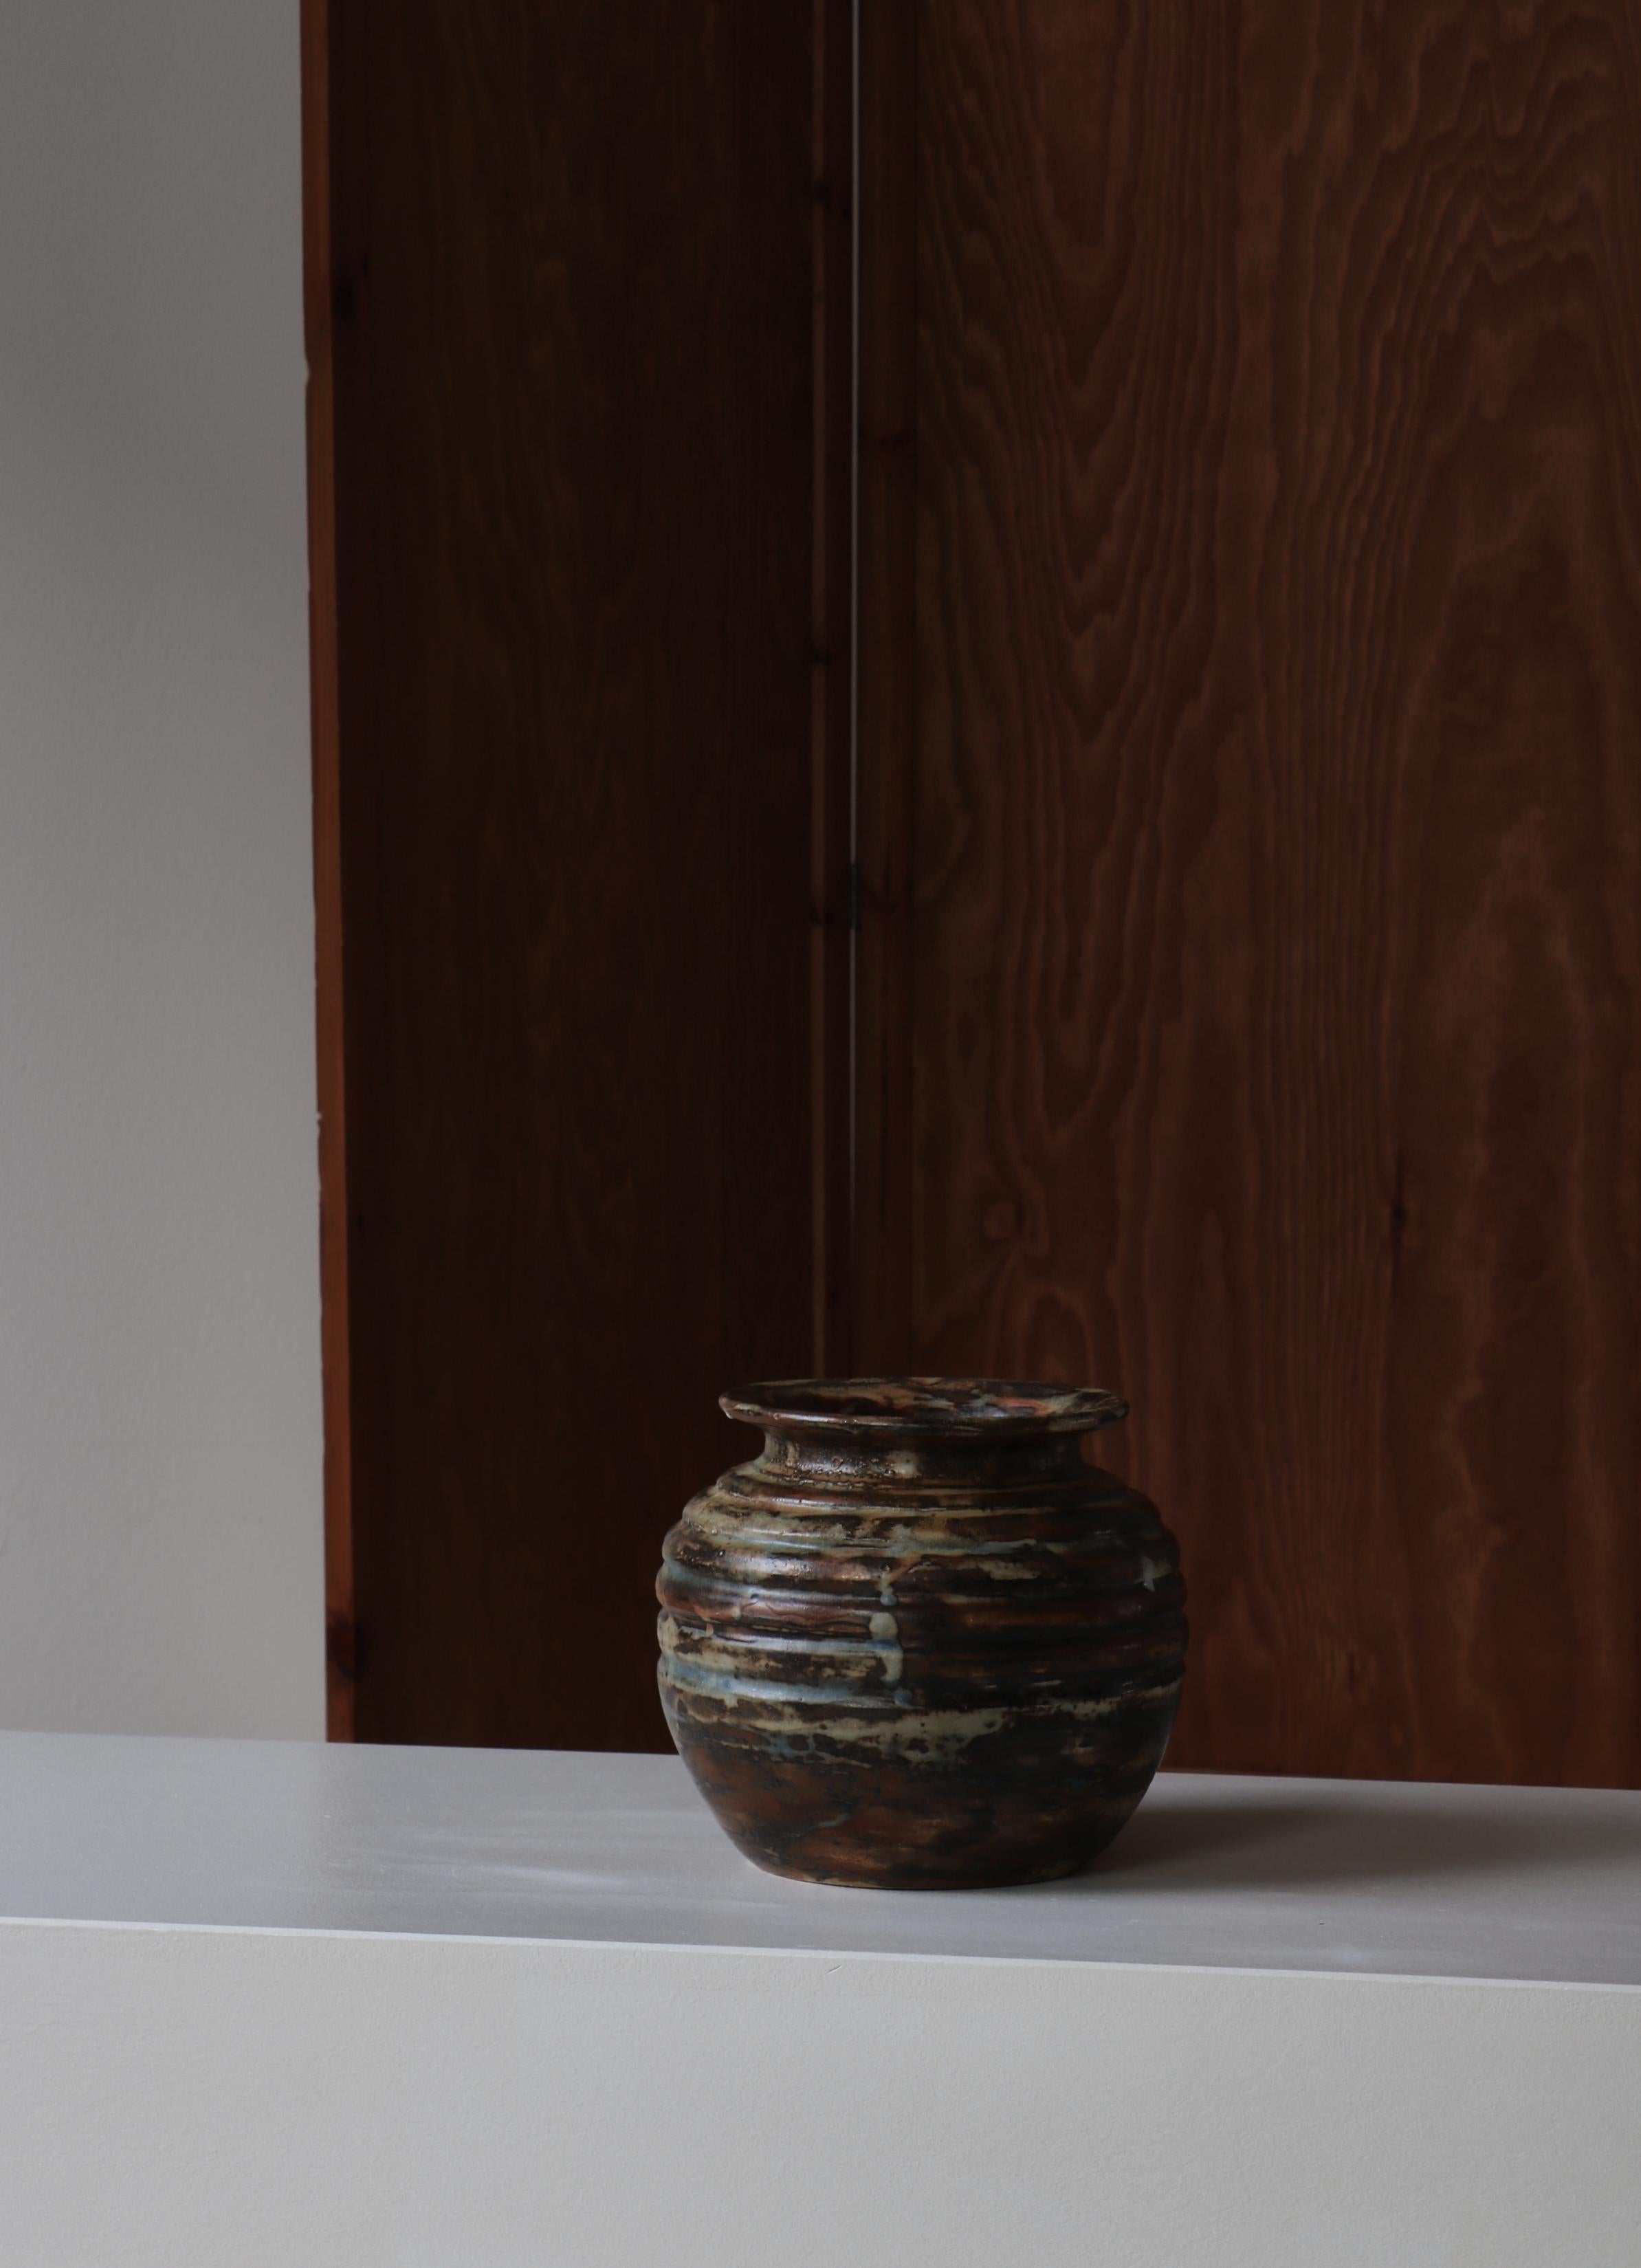 Grand et beau vase en grès de l'artiste céramiste danois Bode Willumsen. Cette pièce unique a été fabriquée à la main dans son propre Studio dans les années 1920-30. Vase tourné, brut et lourd, avec une glaçure Sung très expressive. Signé par le